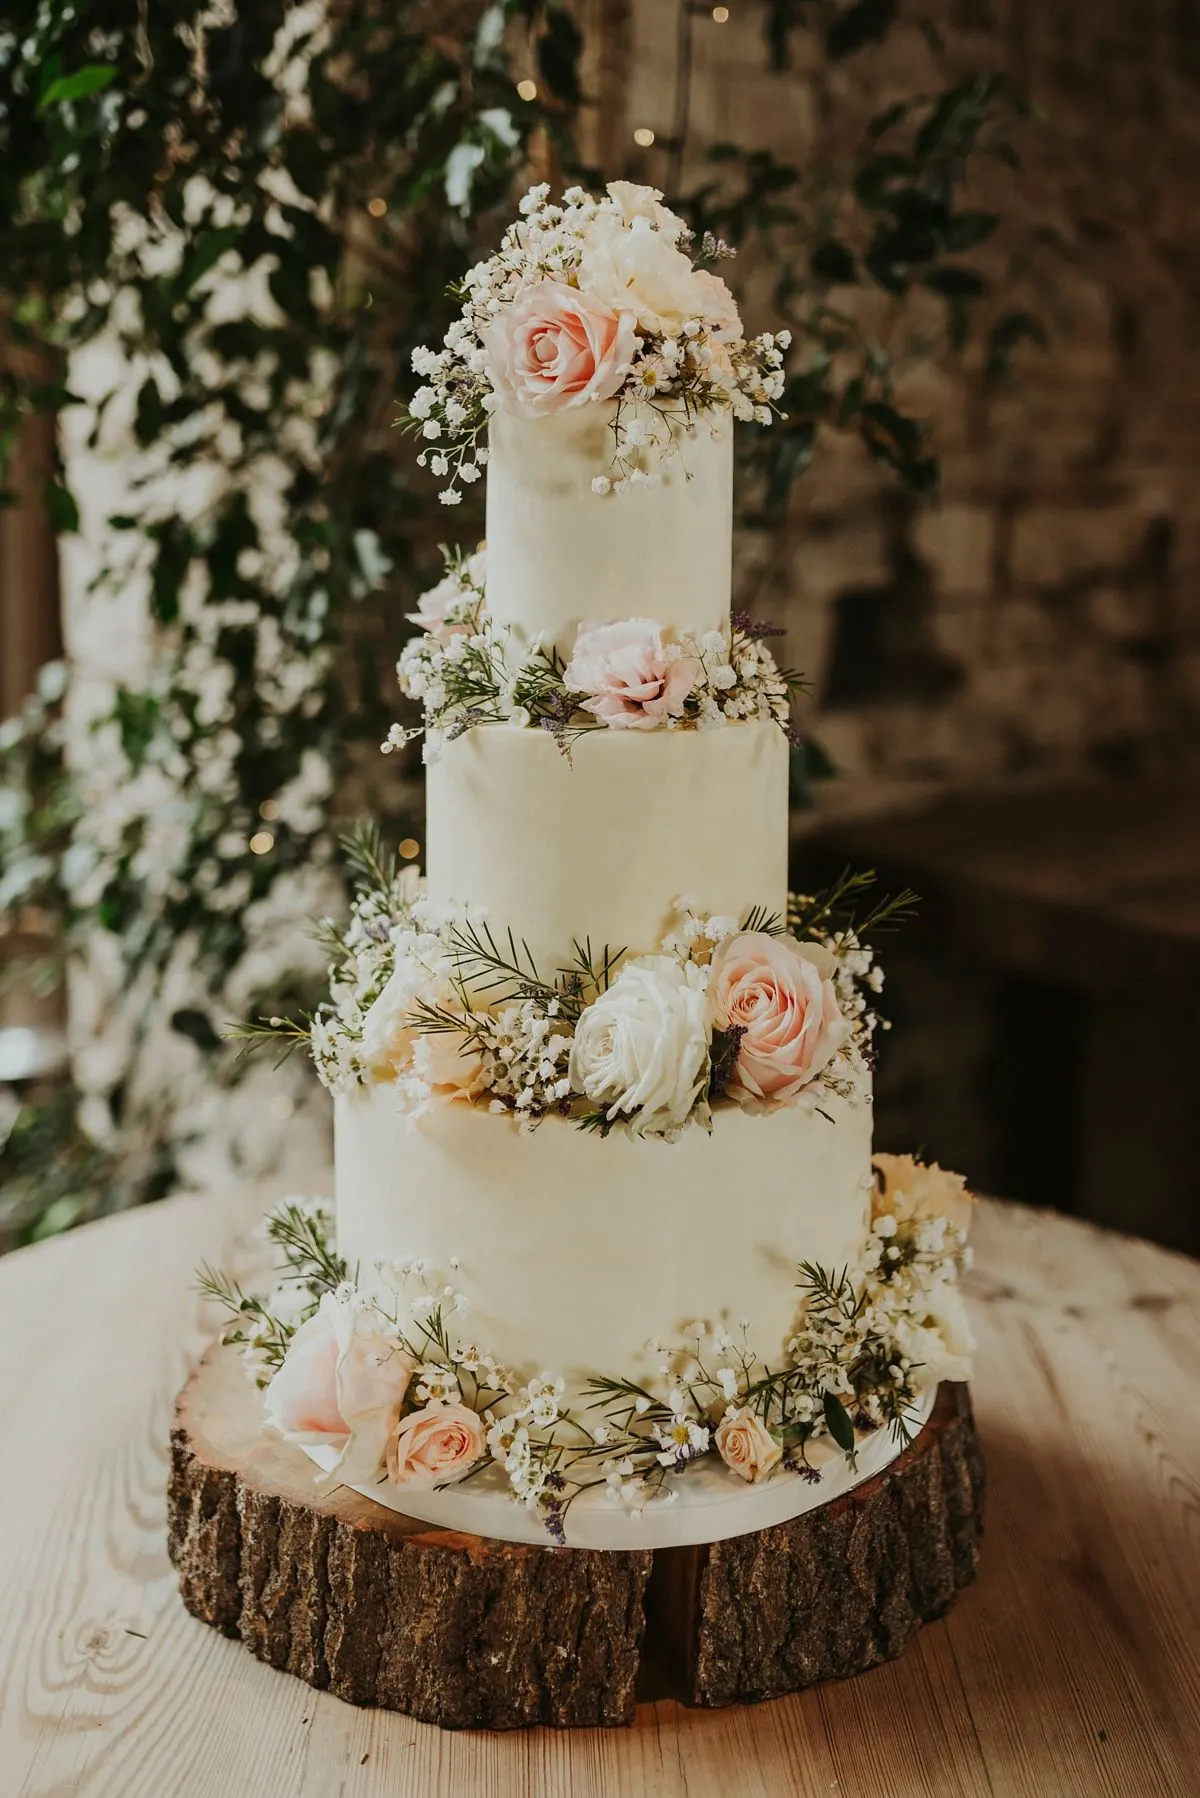 7 Unique Wedding Cake Ideas | Cake & Lace Wedding Blog